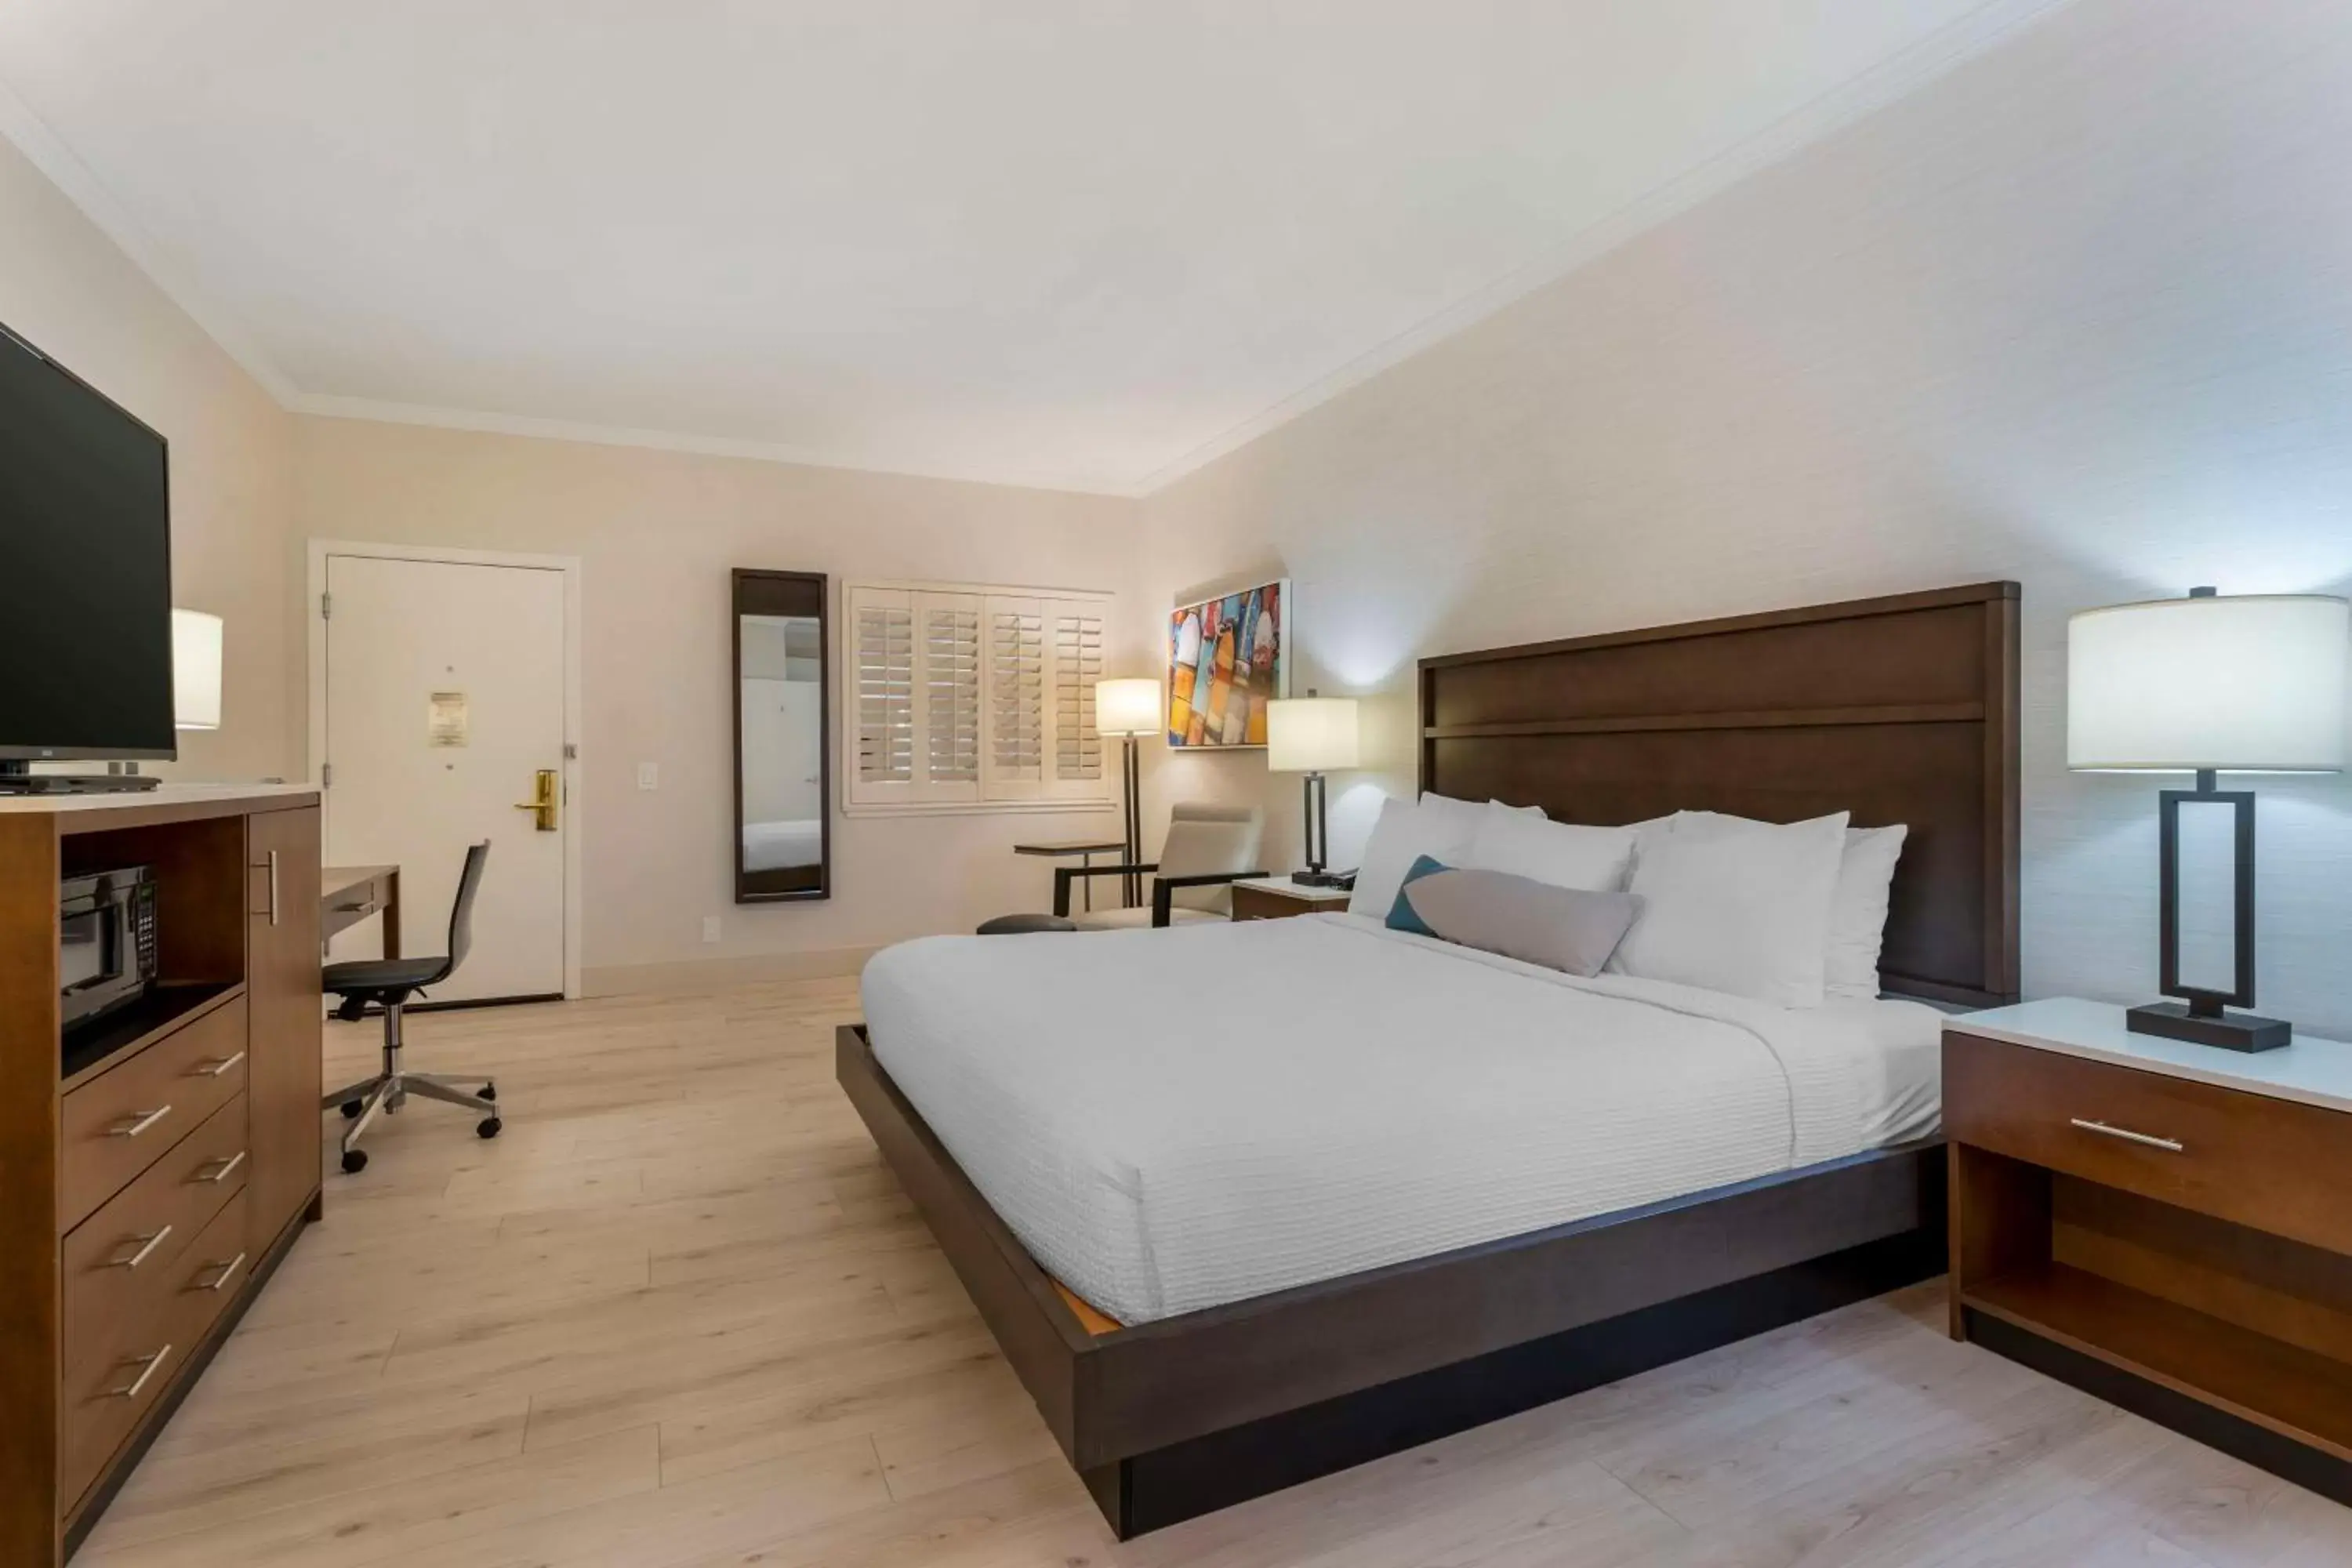 Bedroom, Bed in Best Western Plus All Suites Inn